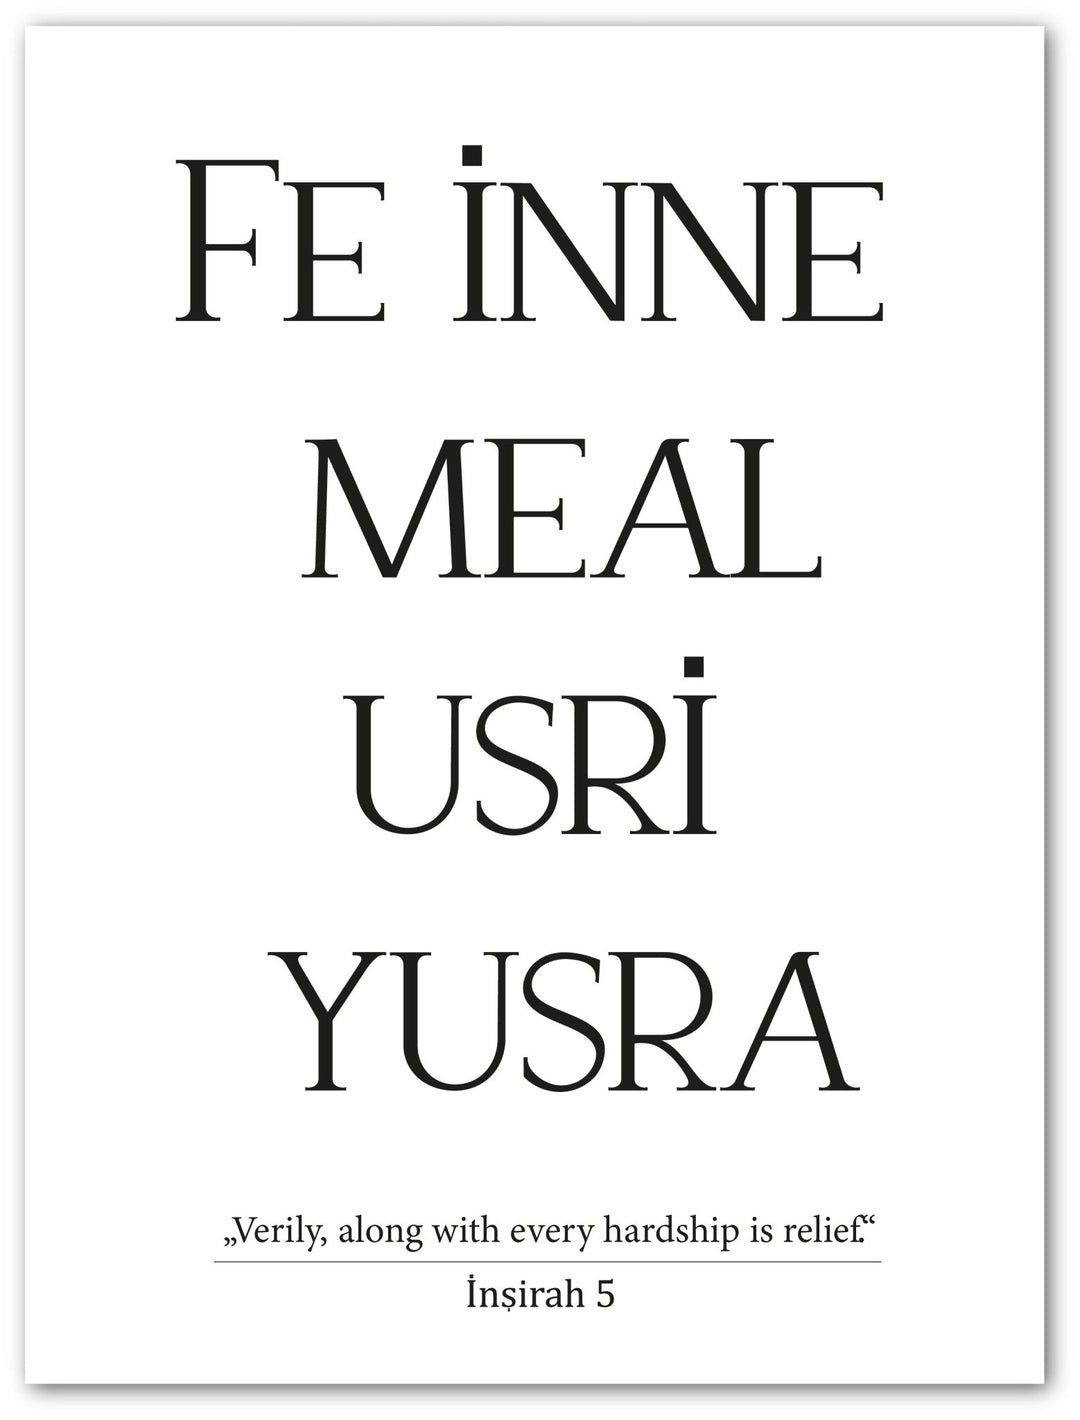 Fe Inne Meal Usri Yusra - englisch/türkisch - Beautiful Wall